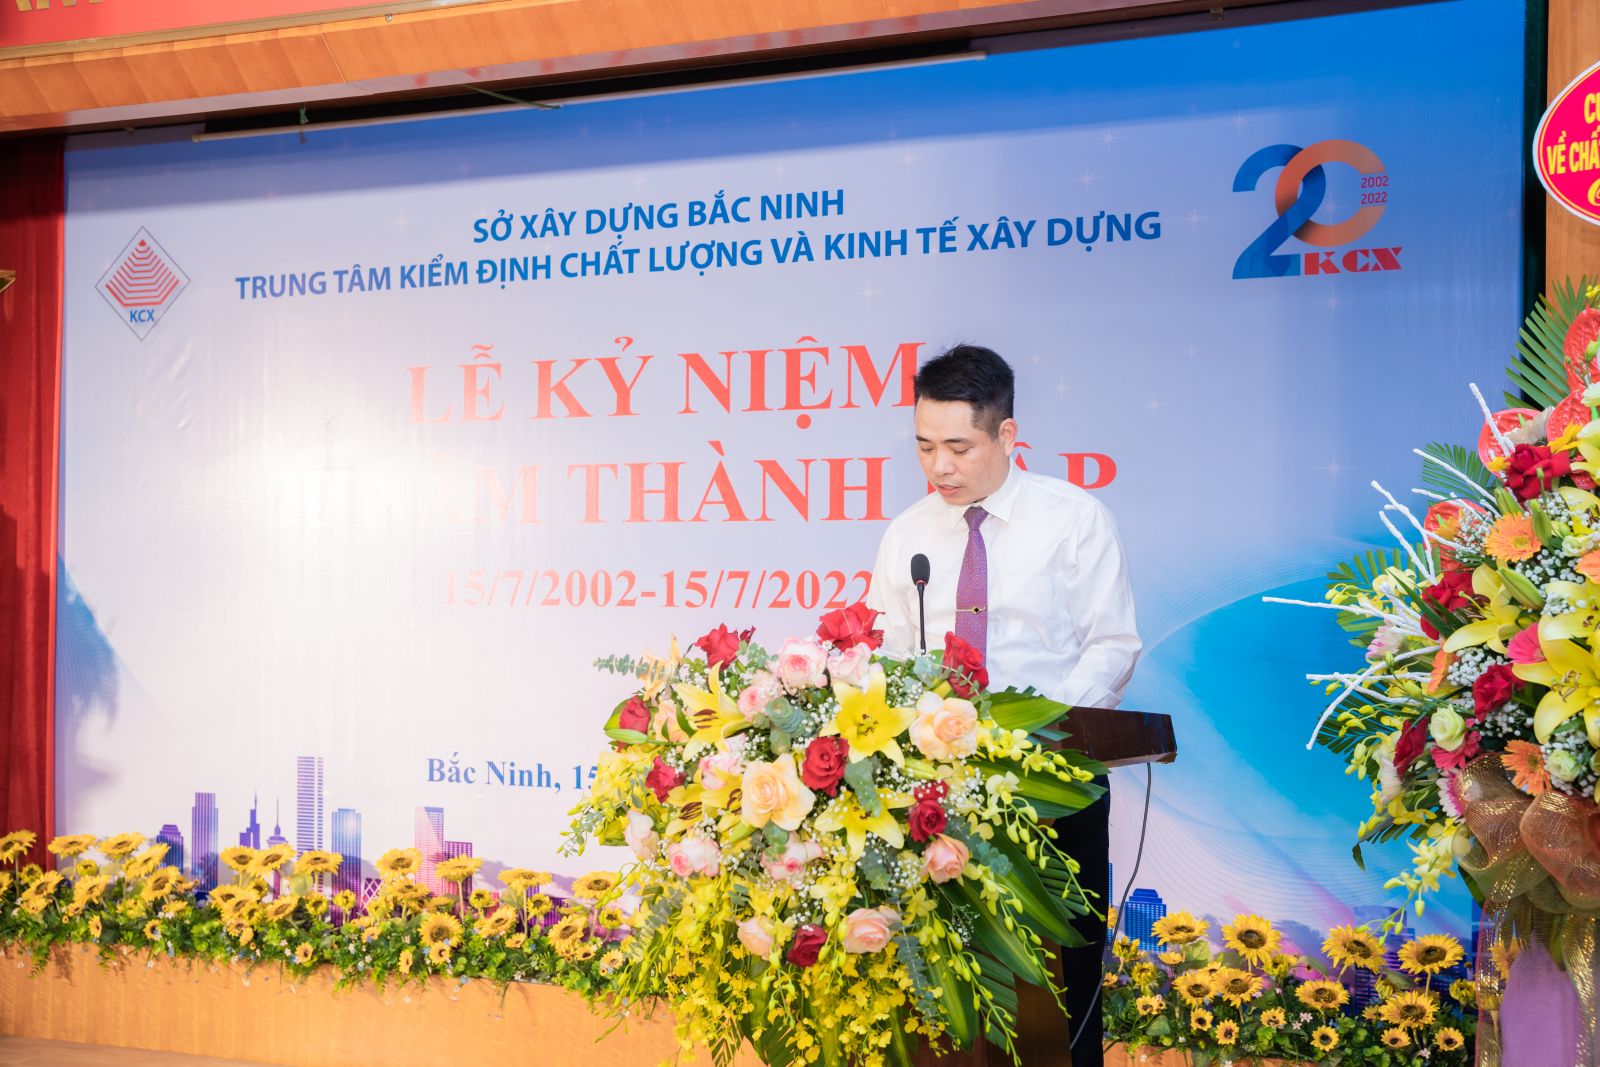 Đồng chí Nguyễn Việt Hùng, Tỉnh uỷ viên, Giám đốc Sở xây dựng Bắc Ninh phát biểu tại lễ kỷ niệm